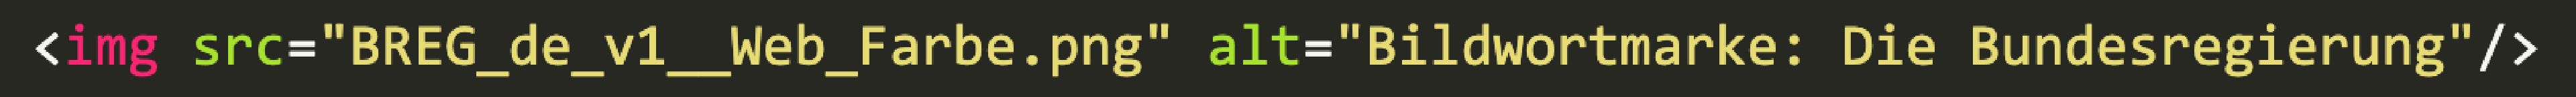 Beispiel einer Zeile mit Alt-Text aus dem Quellcode.